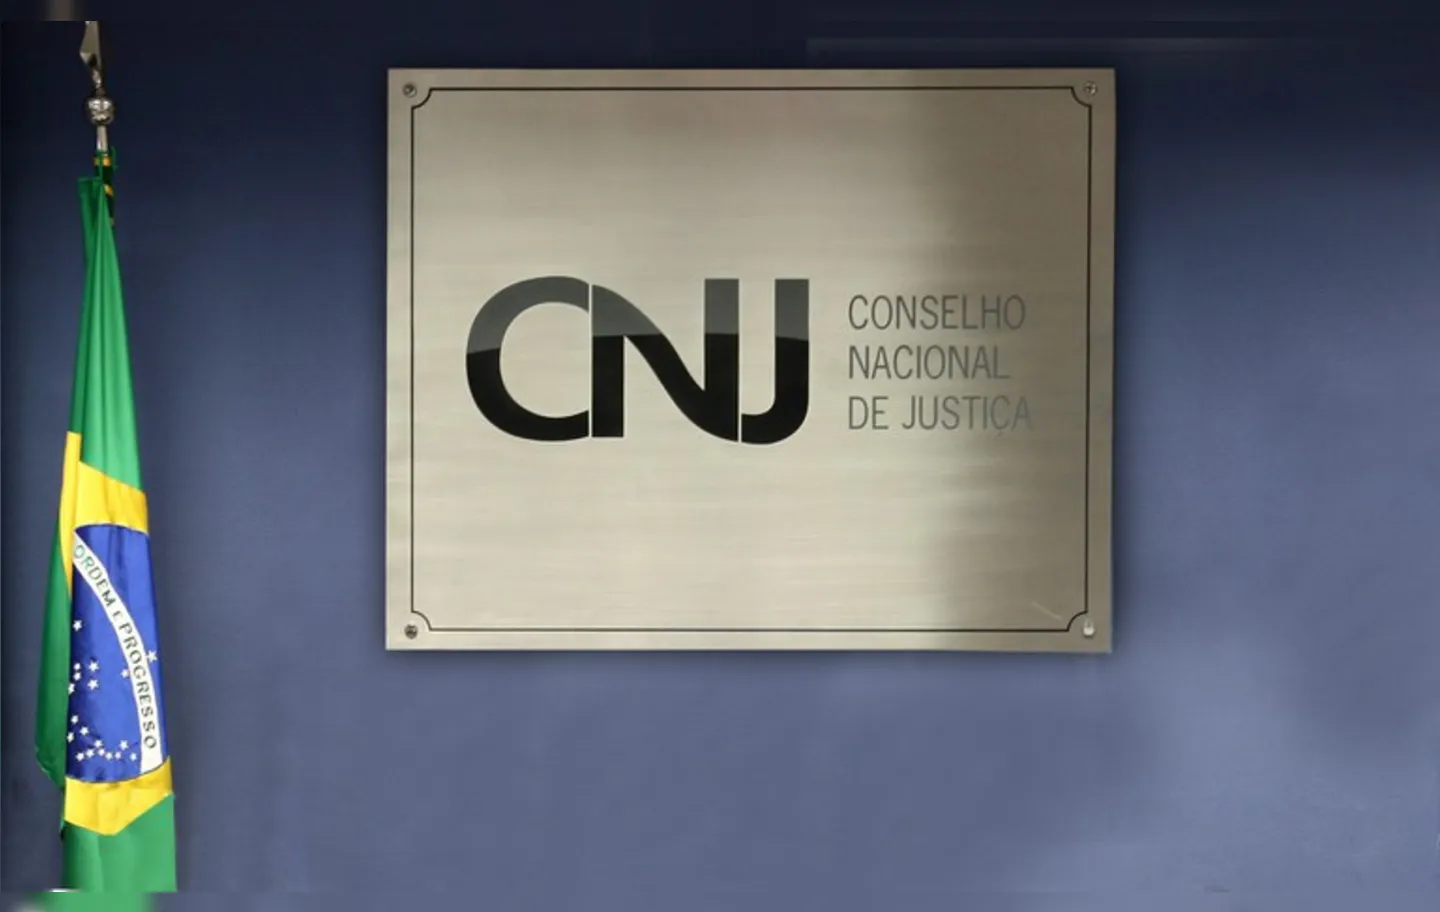 CNJ rege autonomia do Poder Judiciário e cumprimento do Estatuto da Magistratura